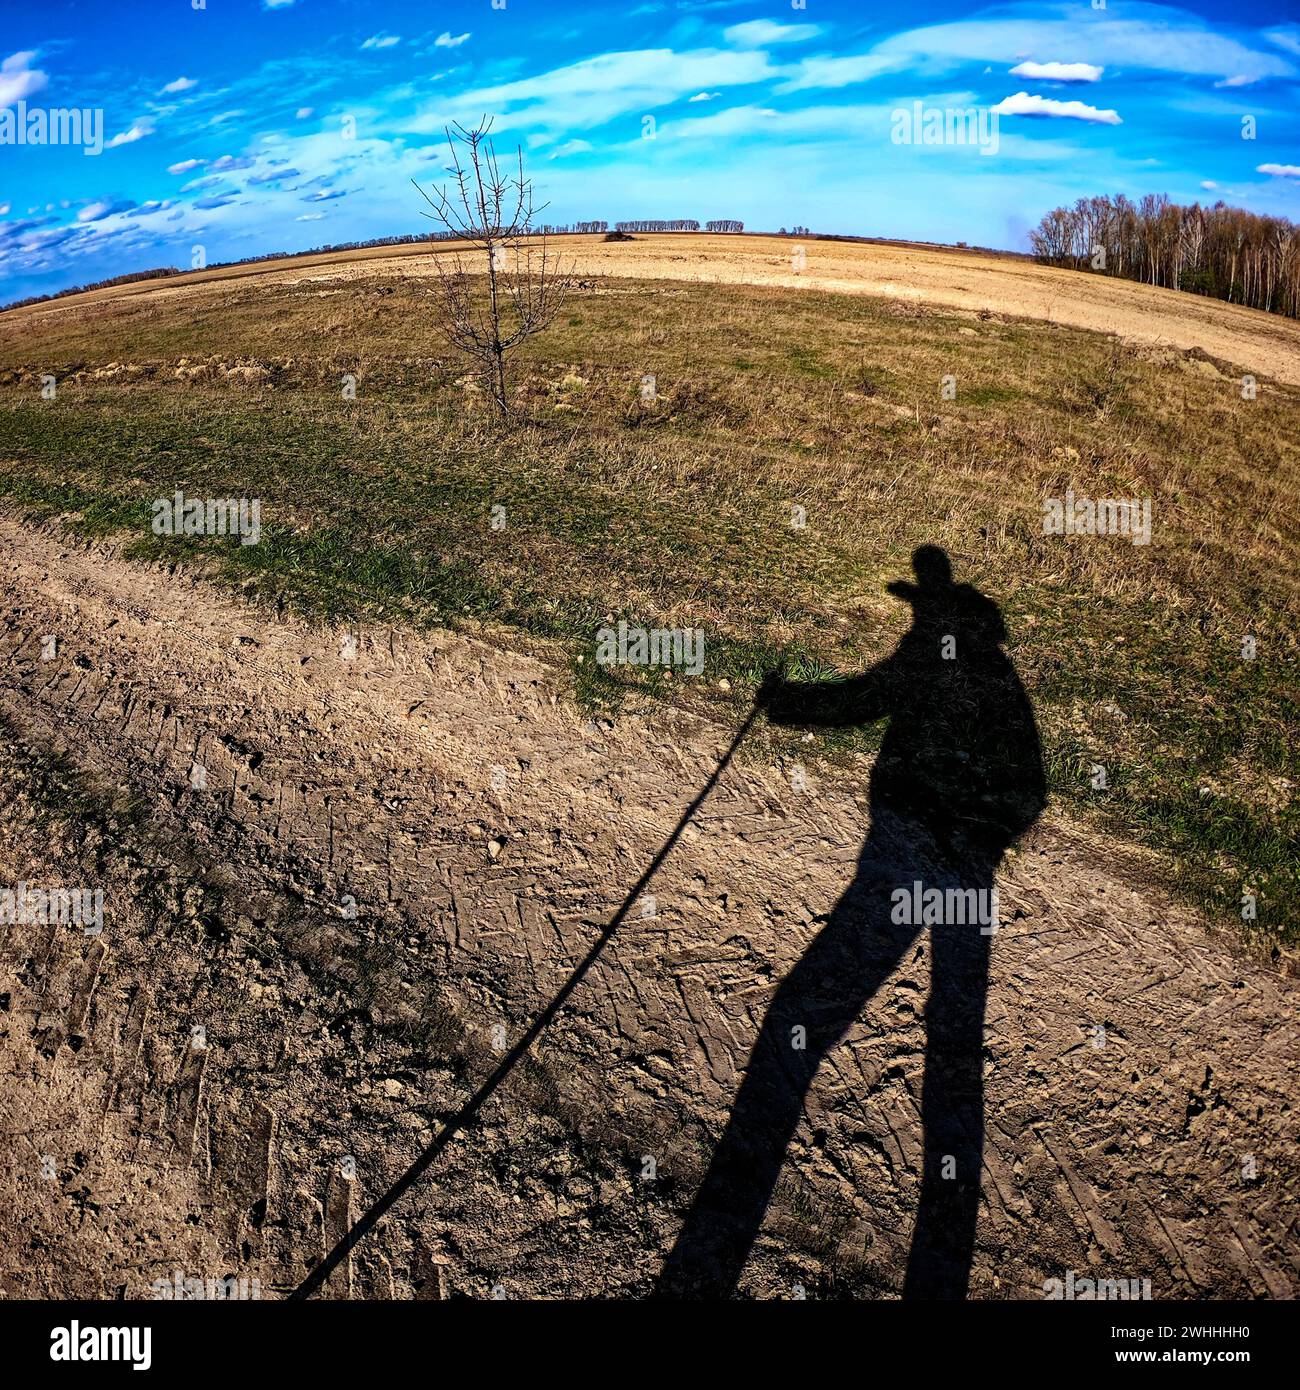 Ein Schatten einer Person mit einem Stock wird auf den Boden geworfen, mit einem kargen Baum und einem weitläufigen Feld unter einem blauen Himmel im Hintergrund. Stockfoto